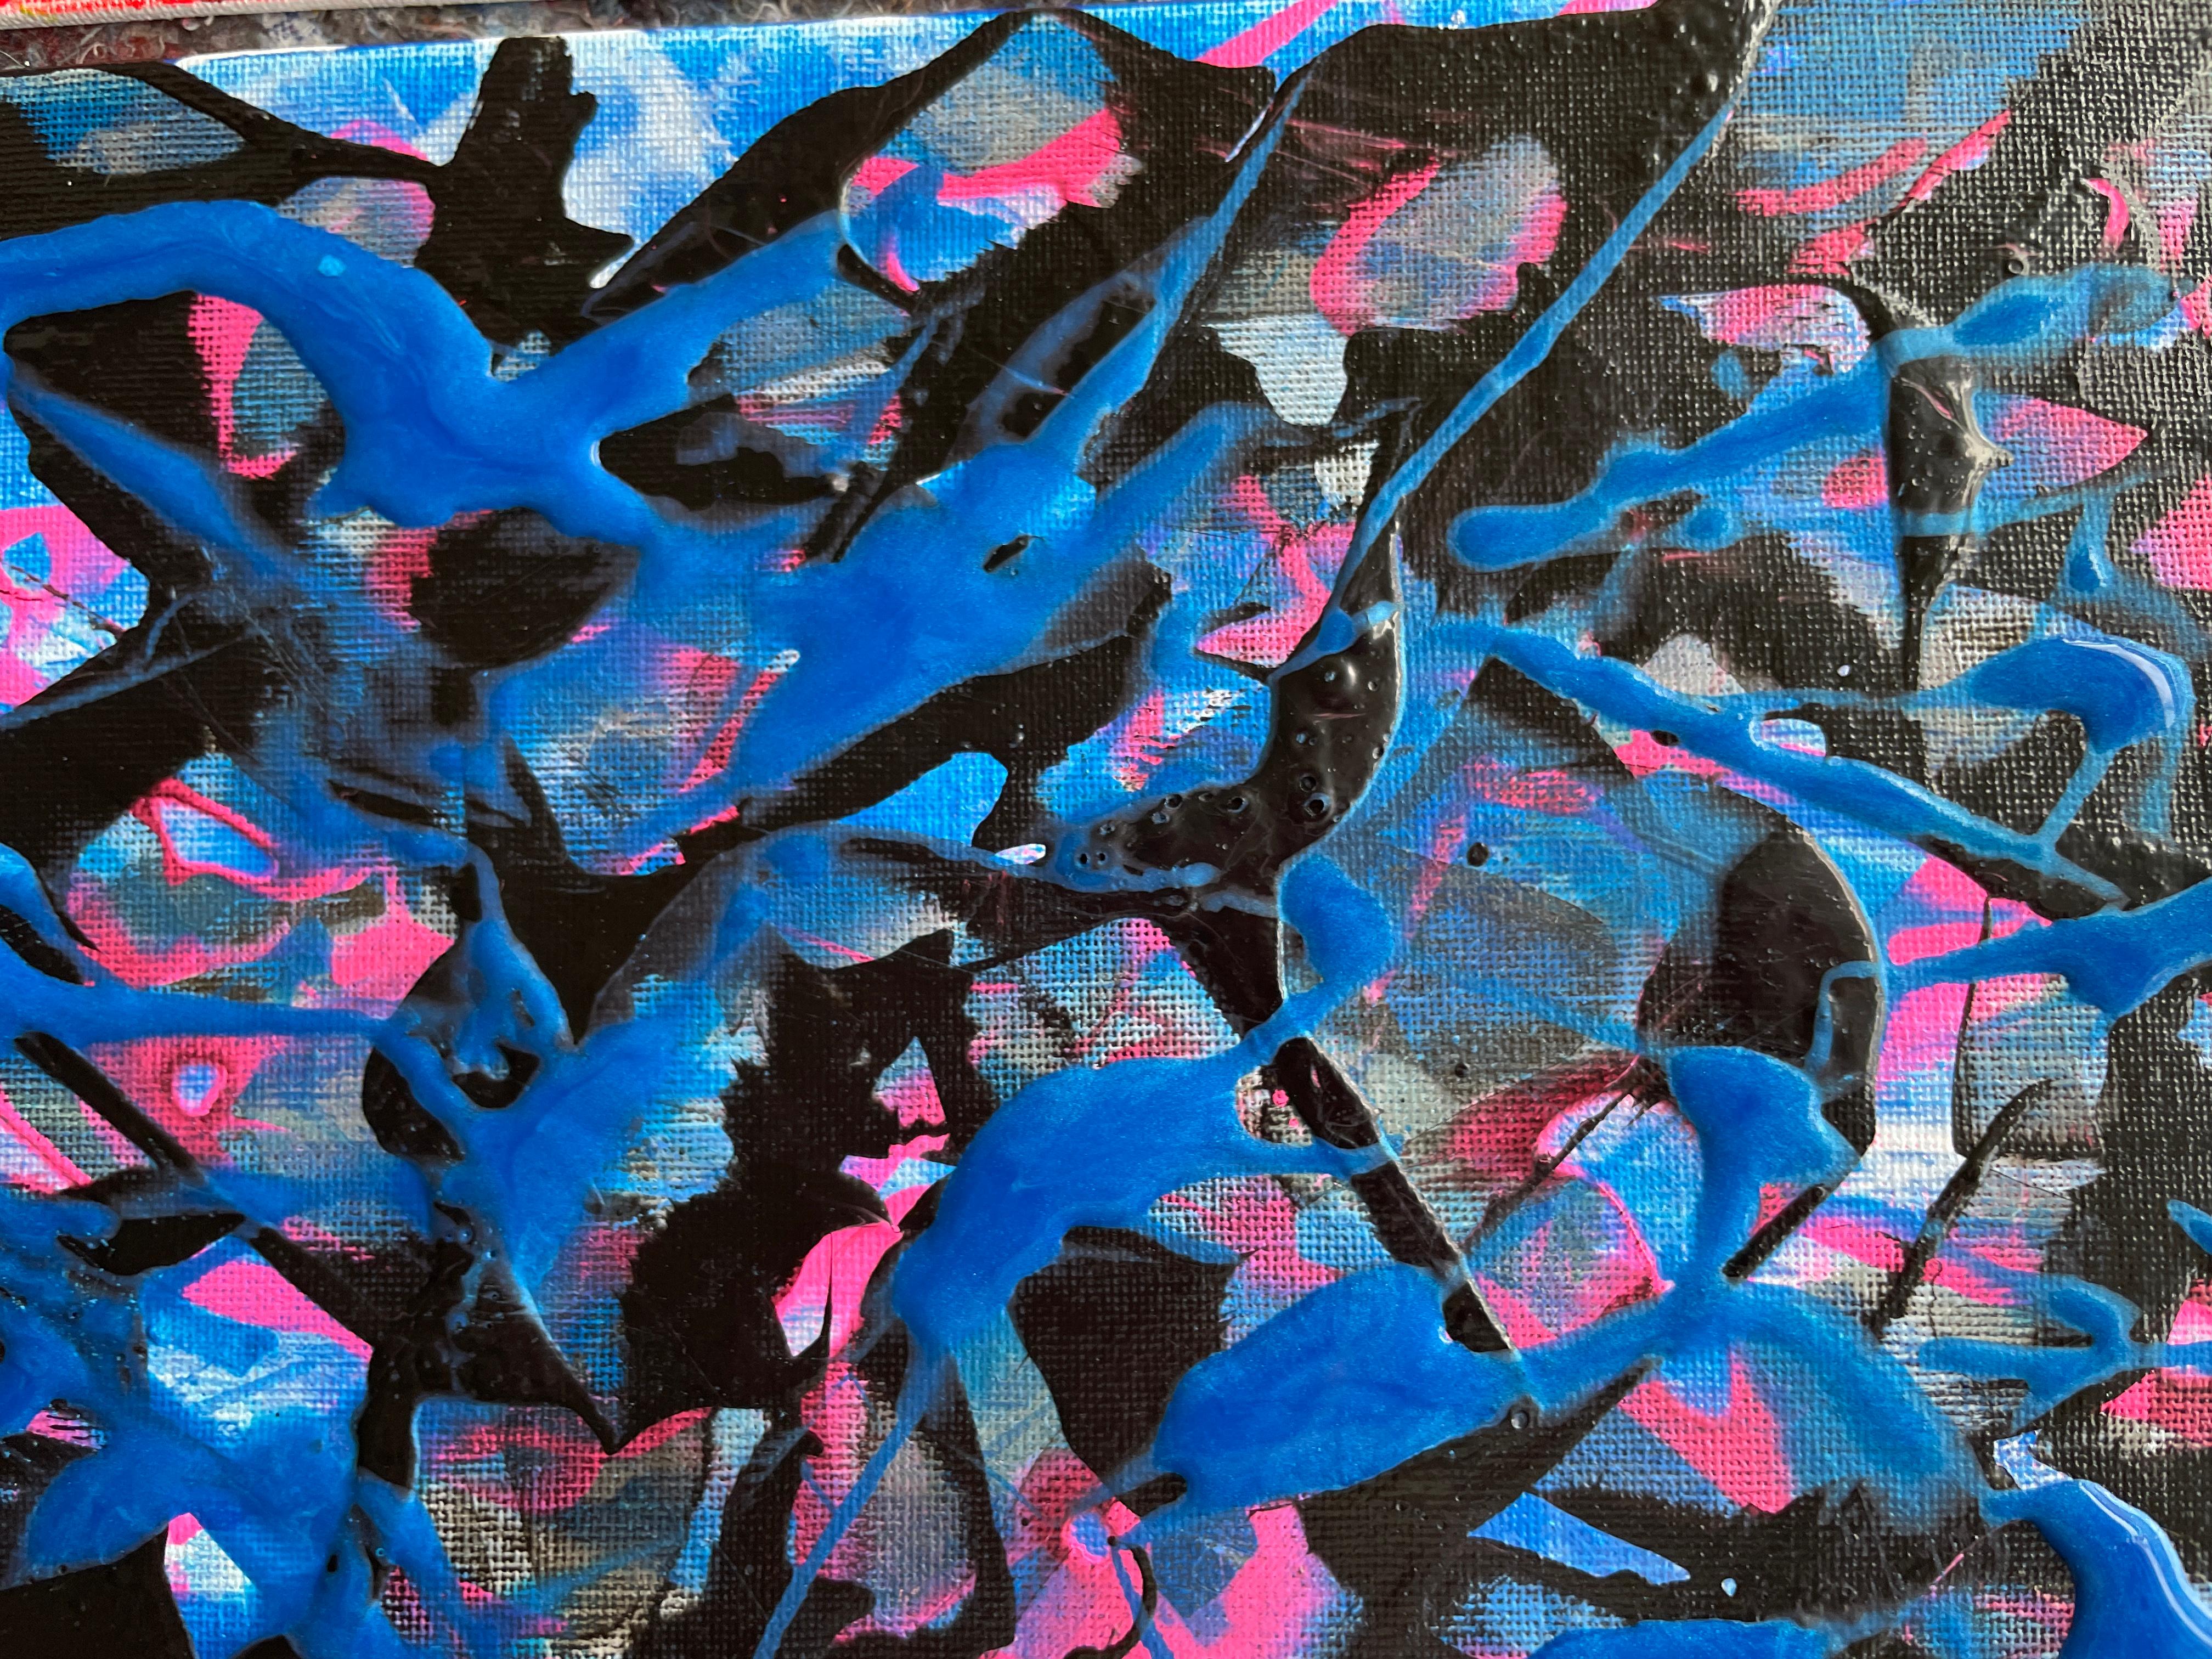 In diesem Werk habe ich meine Leidenschaft in Acrylfarben gegossen, um Tiefe und Bewegung zu erzeugen. Blau- und Weißtöne verflechten sich und spiegeln abstrakte Emotionen wider, die frei fließen, wie Meereswellen an einem stürmischen Tag. Jeder